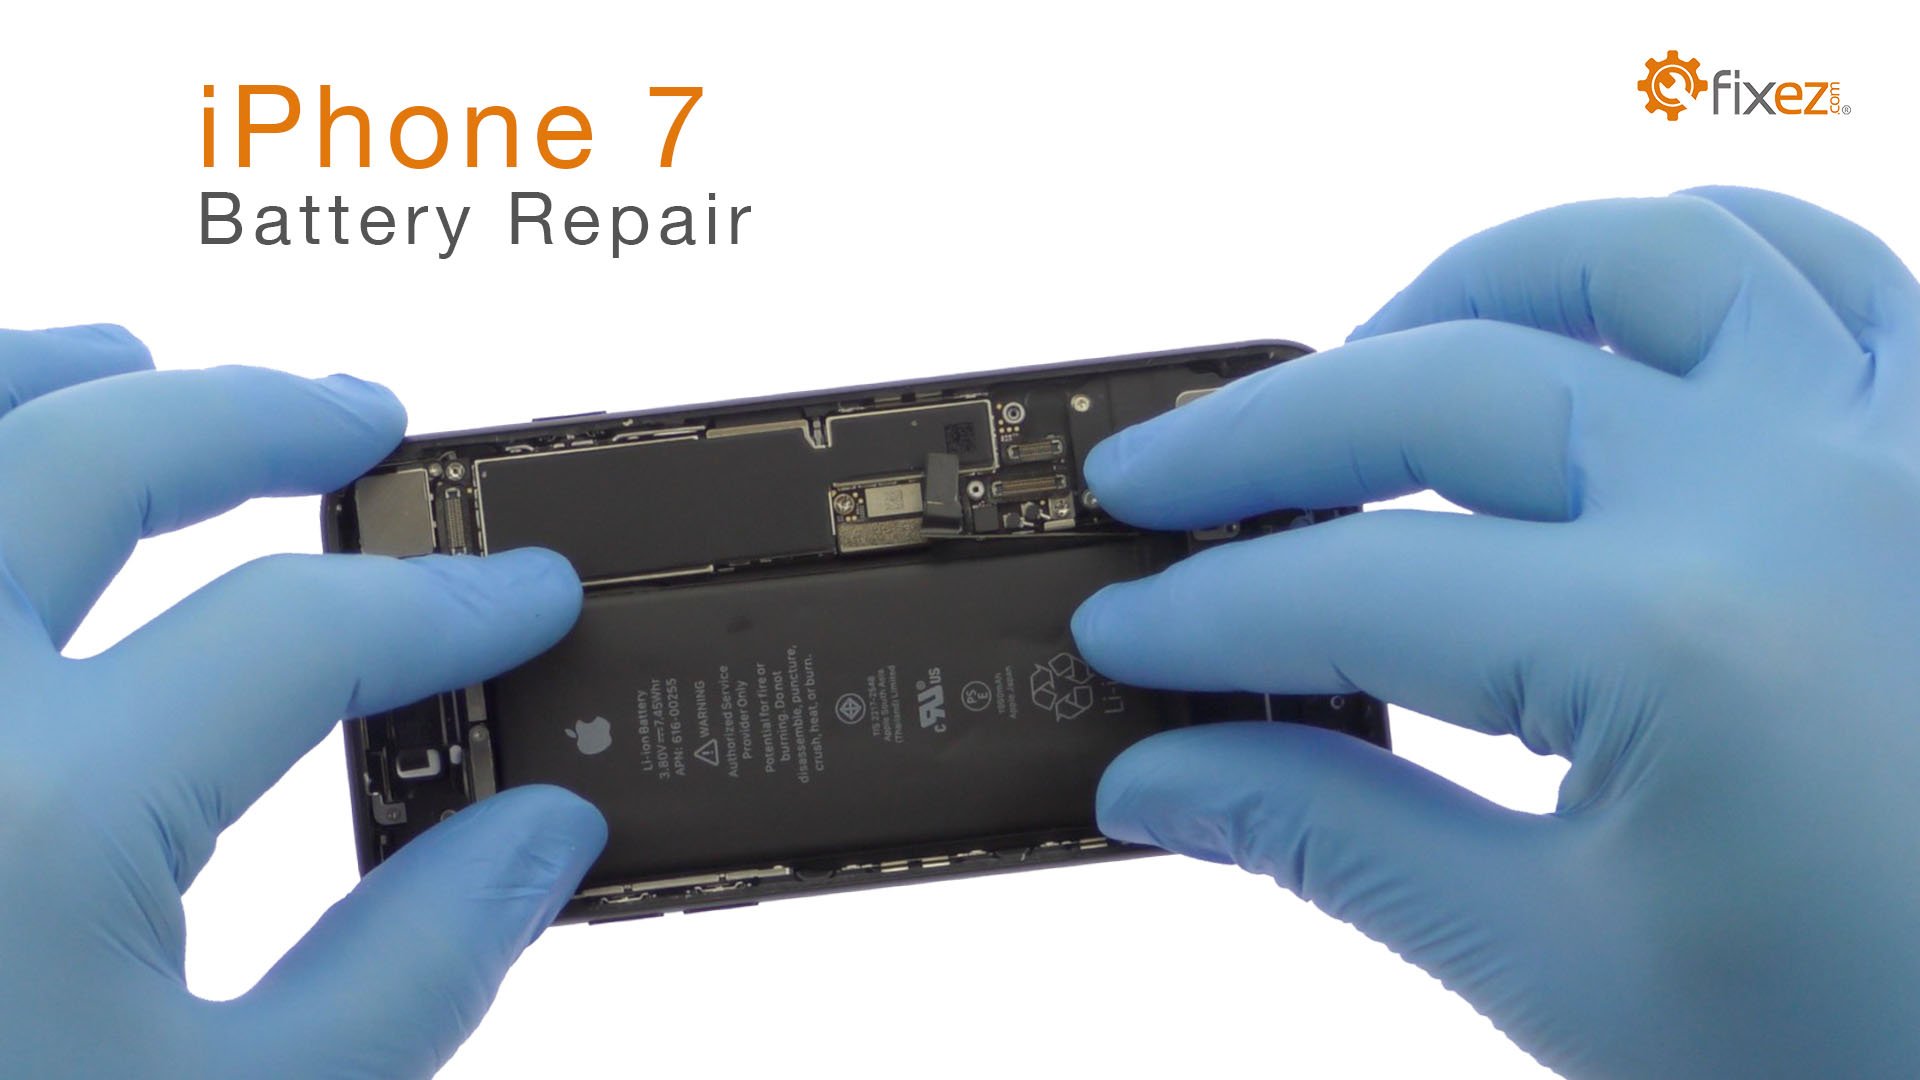 iPhone 7 Battery Repair